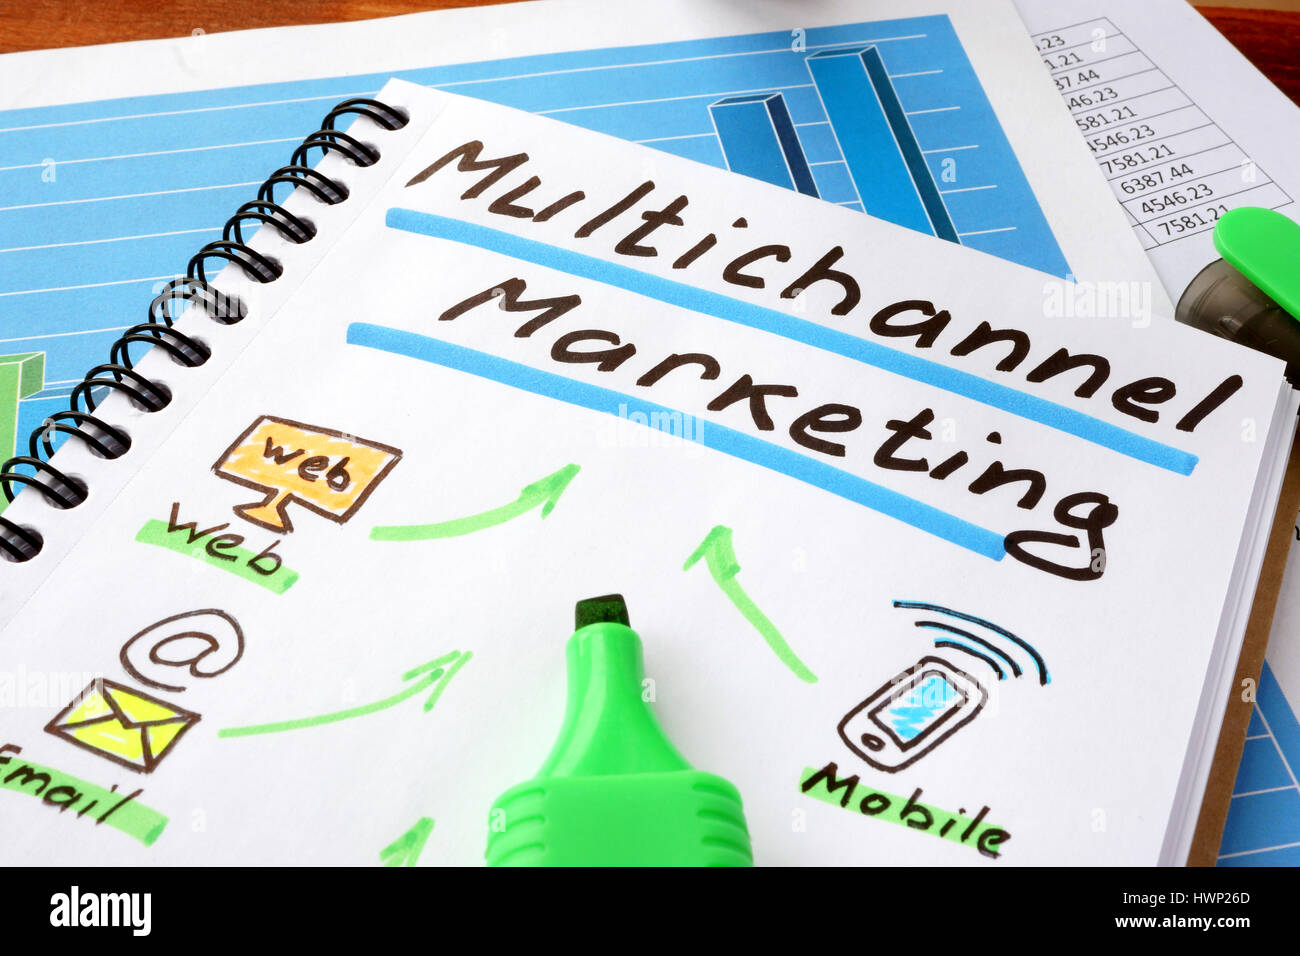 Multichannel-Marketing in einem Notizbuch und Marker geschrieben. Stockfoto